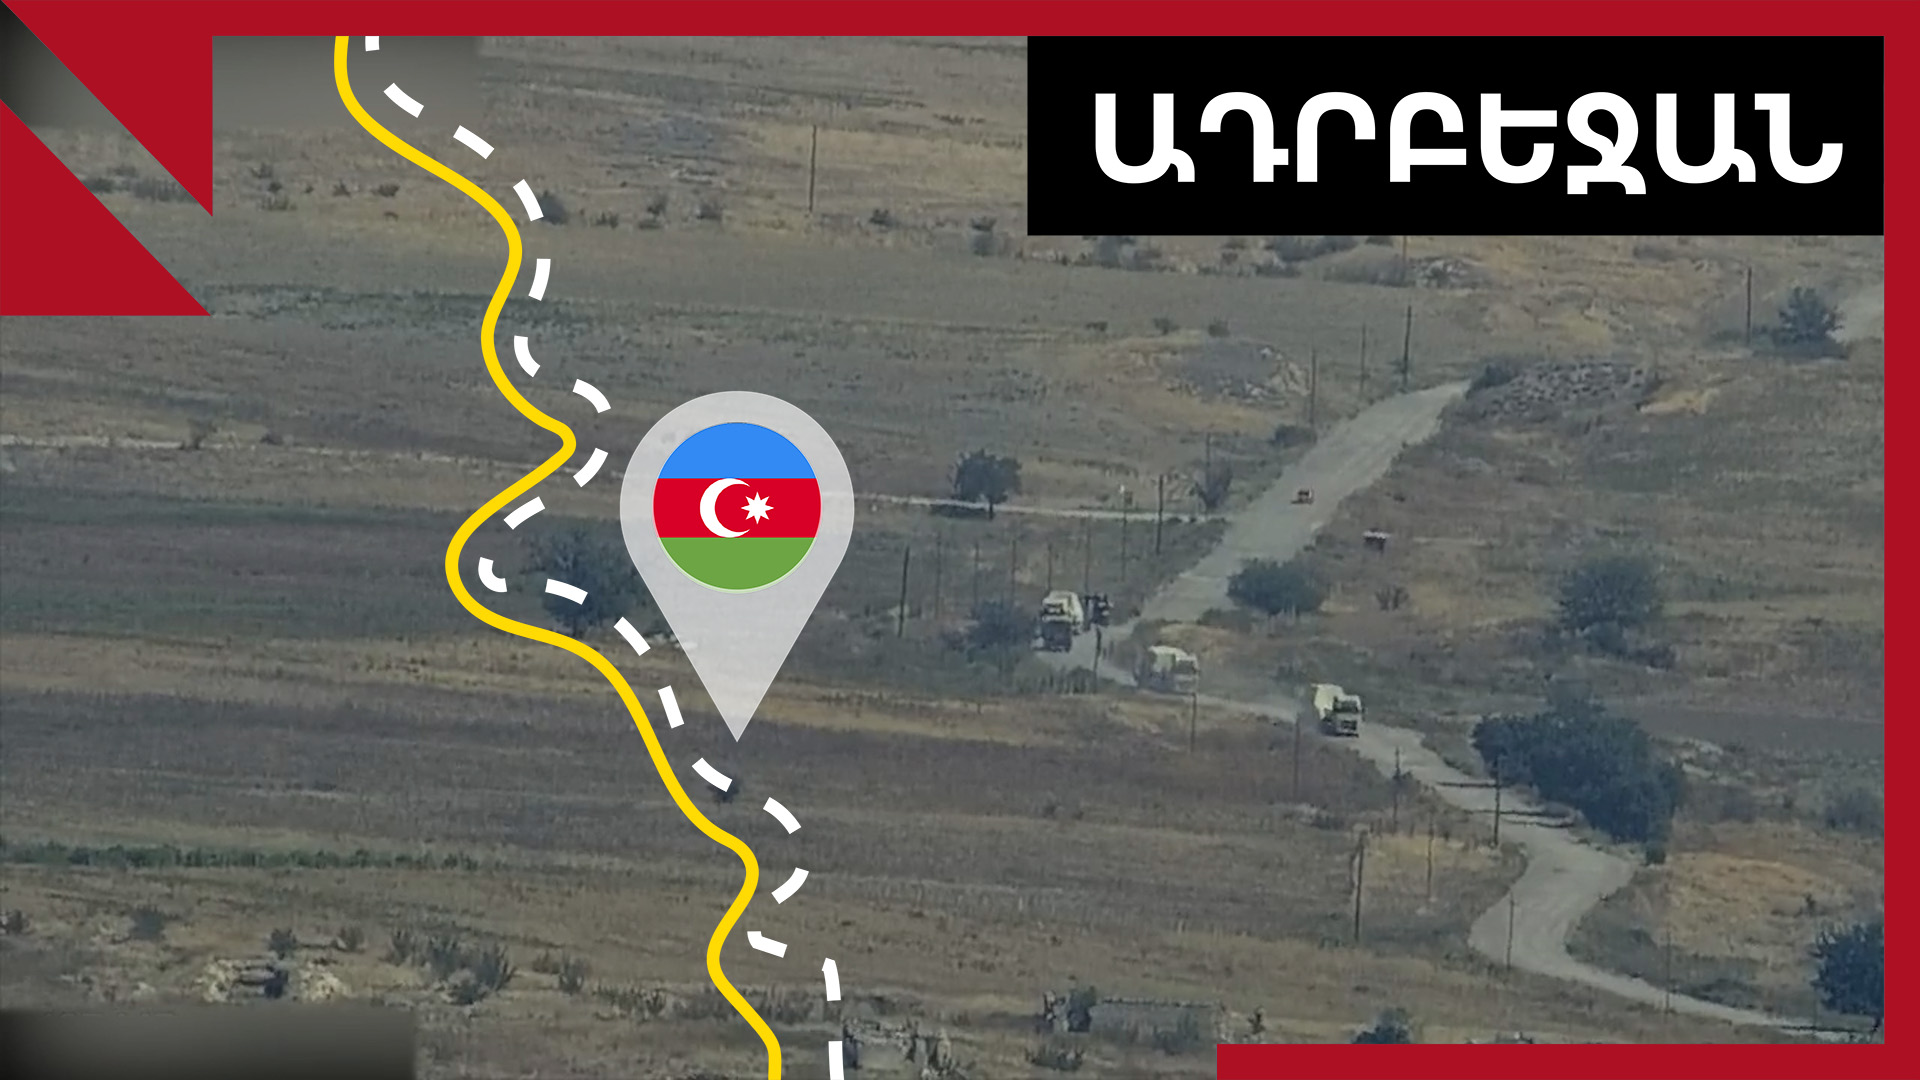 Ինչ են խոսում սահմանային լարվածության մասին Ադրբեջանում, Իրանում ու Թուրքիայում